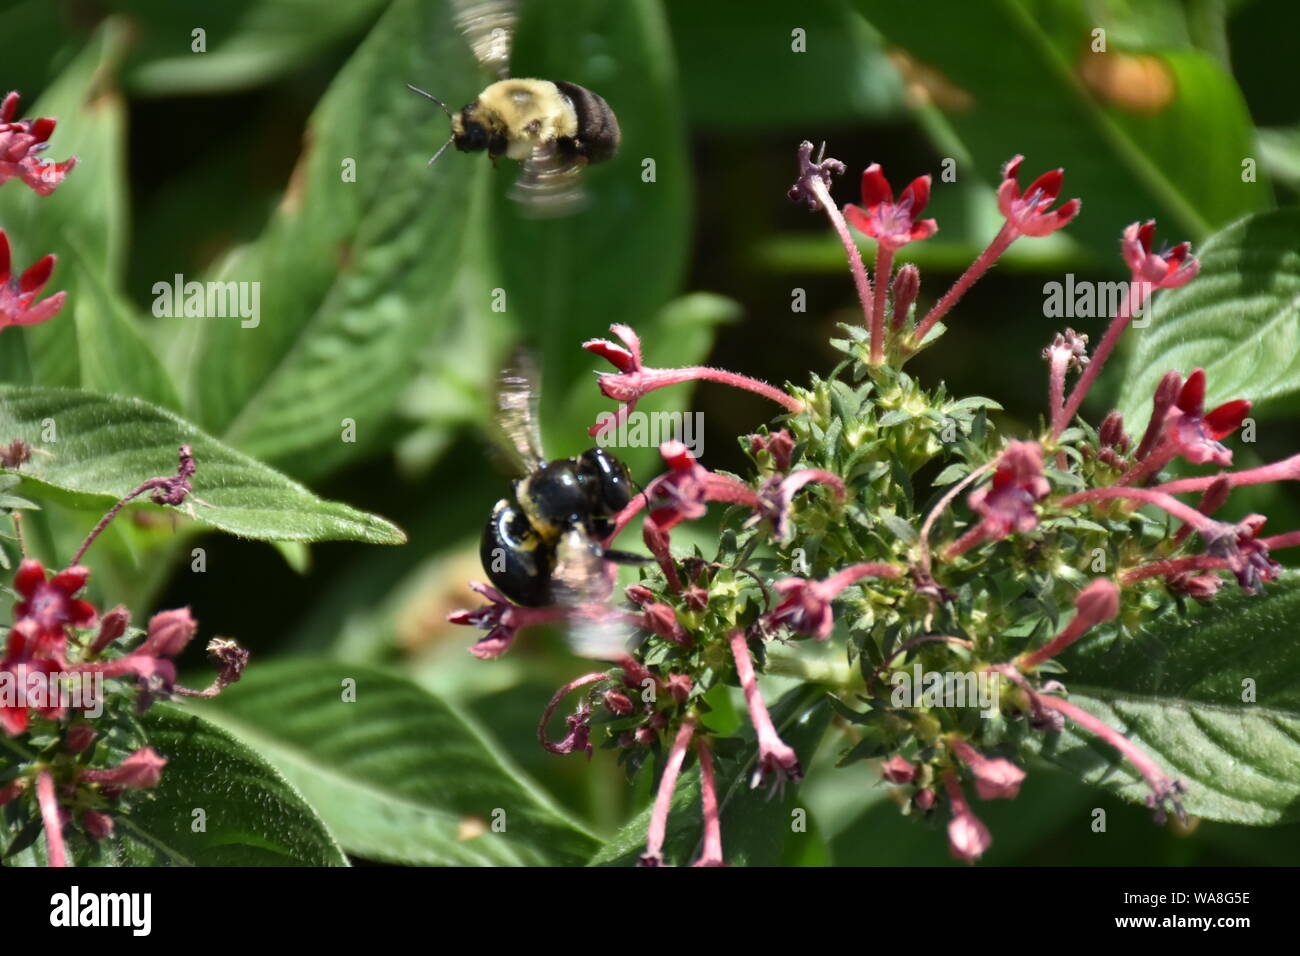 Ho creato questa immagine macro di un ape su un fiore o api su un fiore per mettere in pratica la mia fotografia macro abilità. Foto Stock